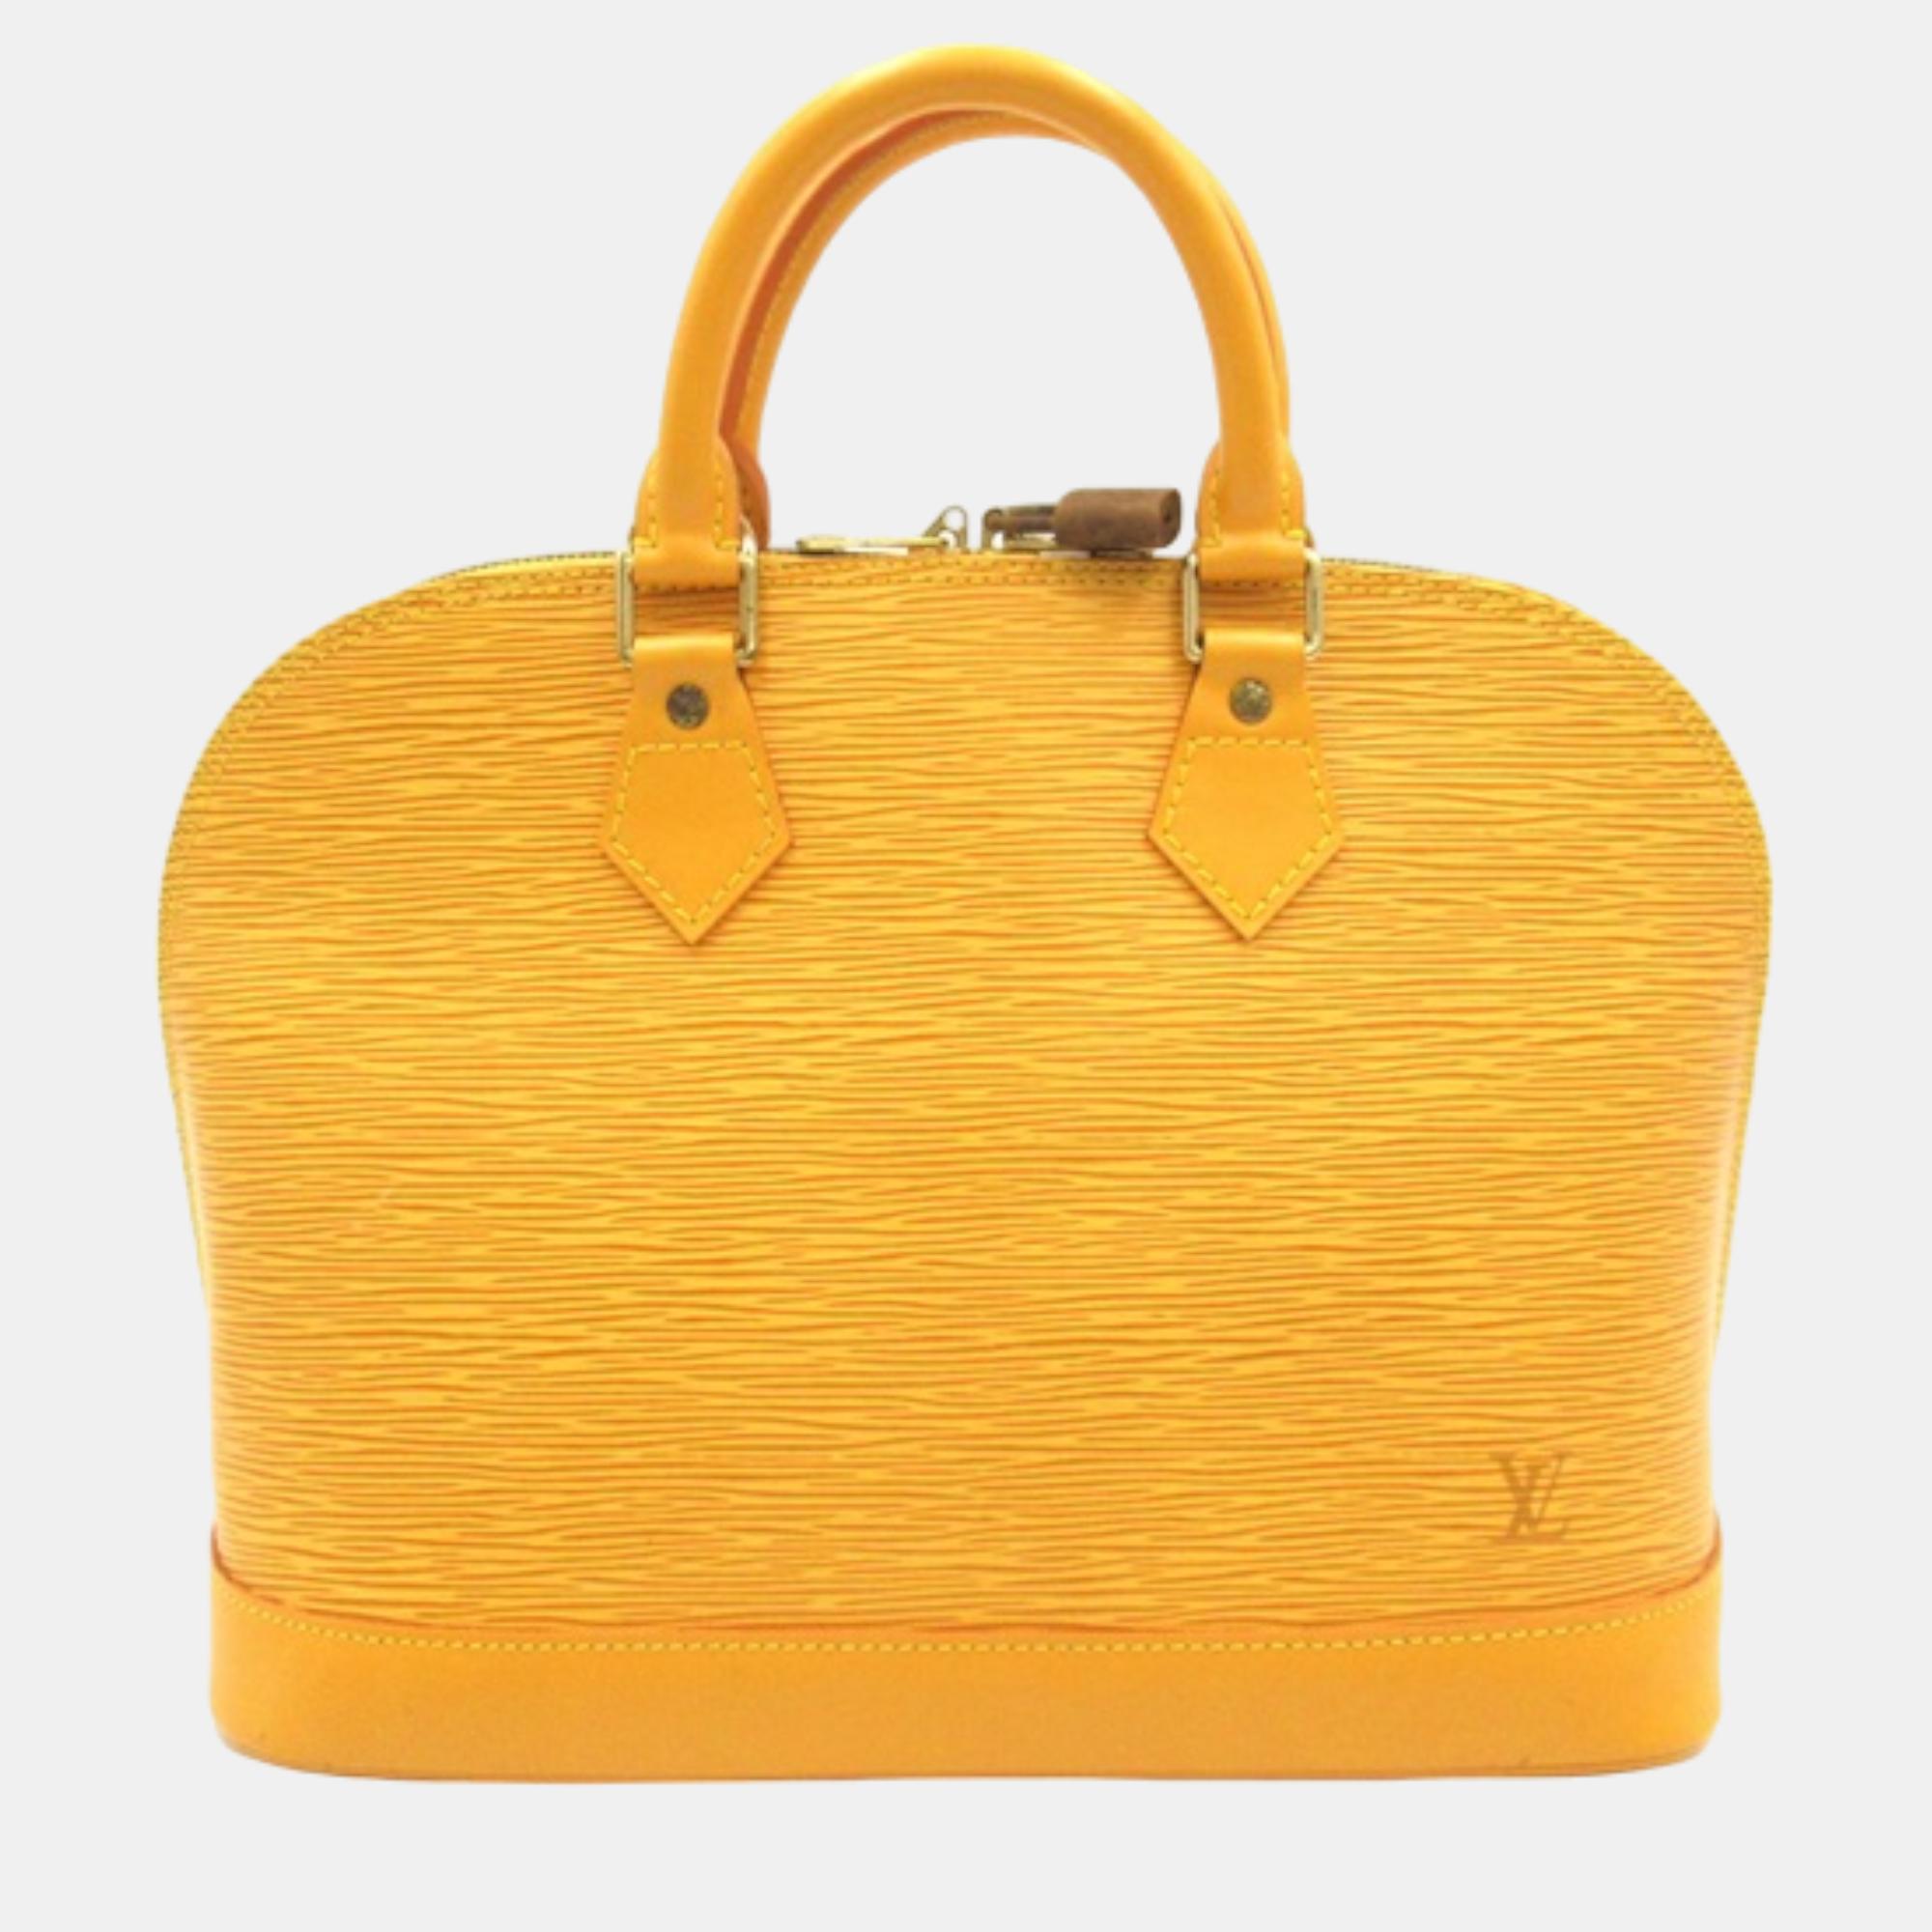 Louis vuitton yellow epi leather alma pm handbag